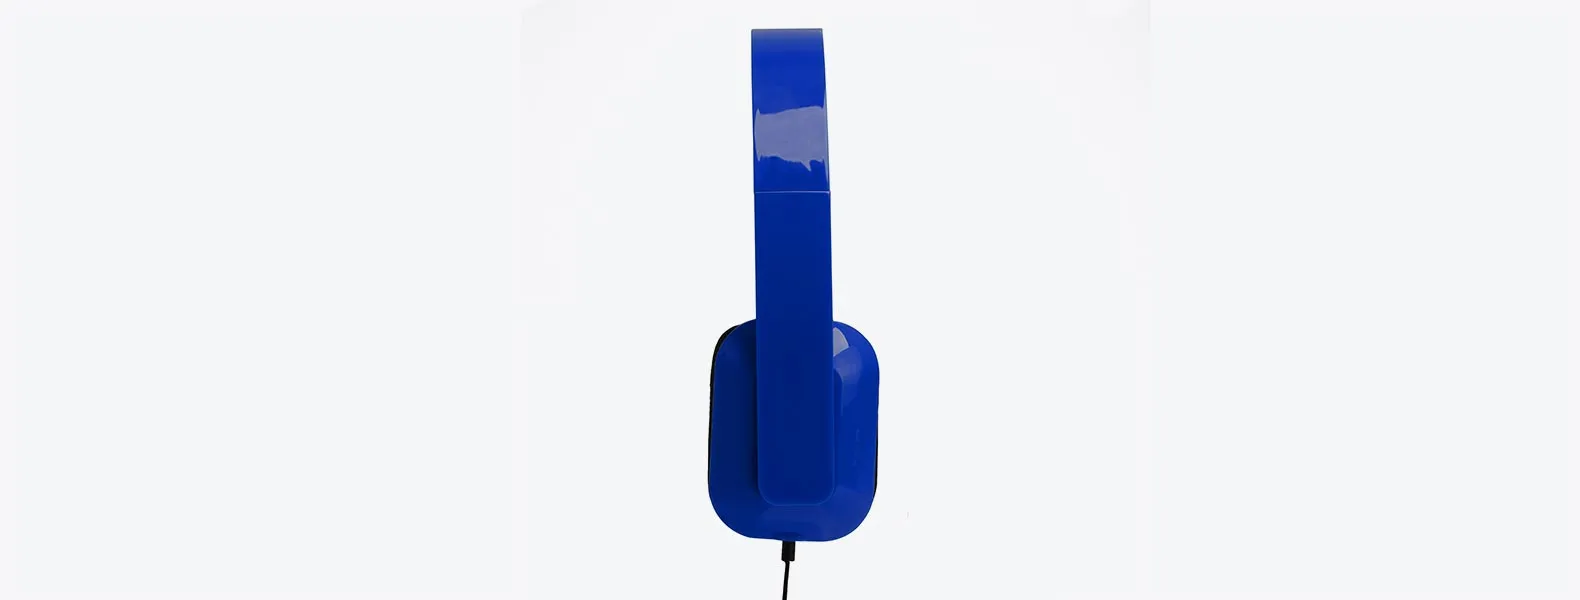 Fone de ouvido dobrável azul em ABS com ligação stereo de 3,5mm e cabo com 1,45m. Disponível nas cores branco, preto e azul.